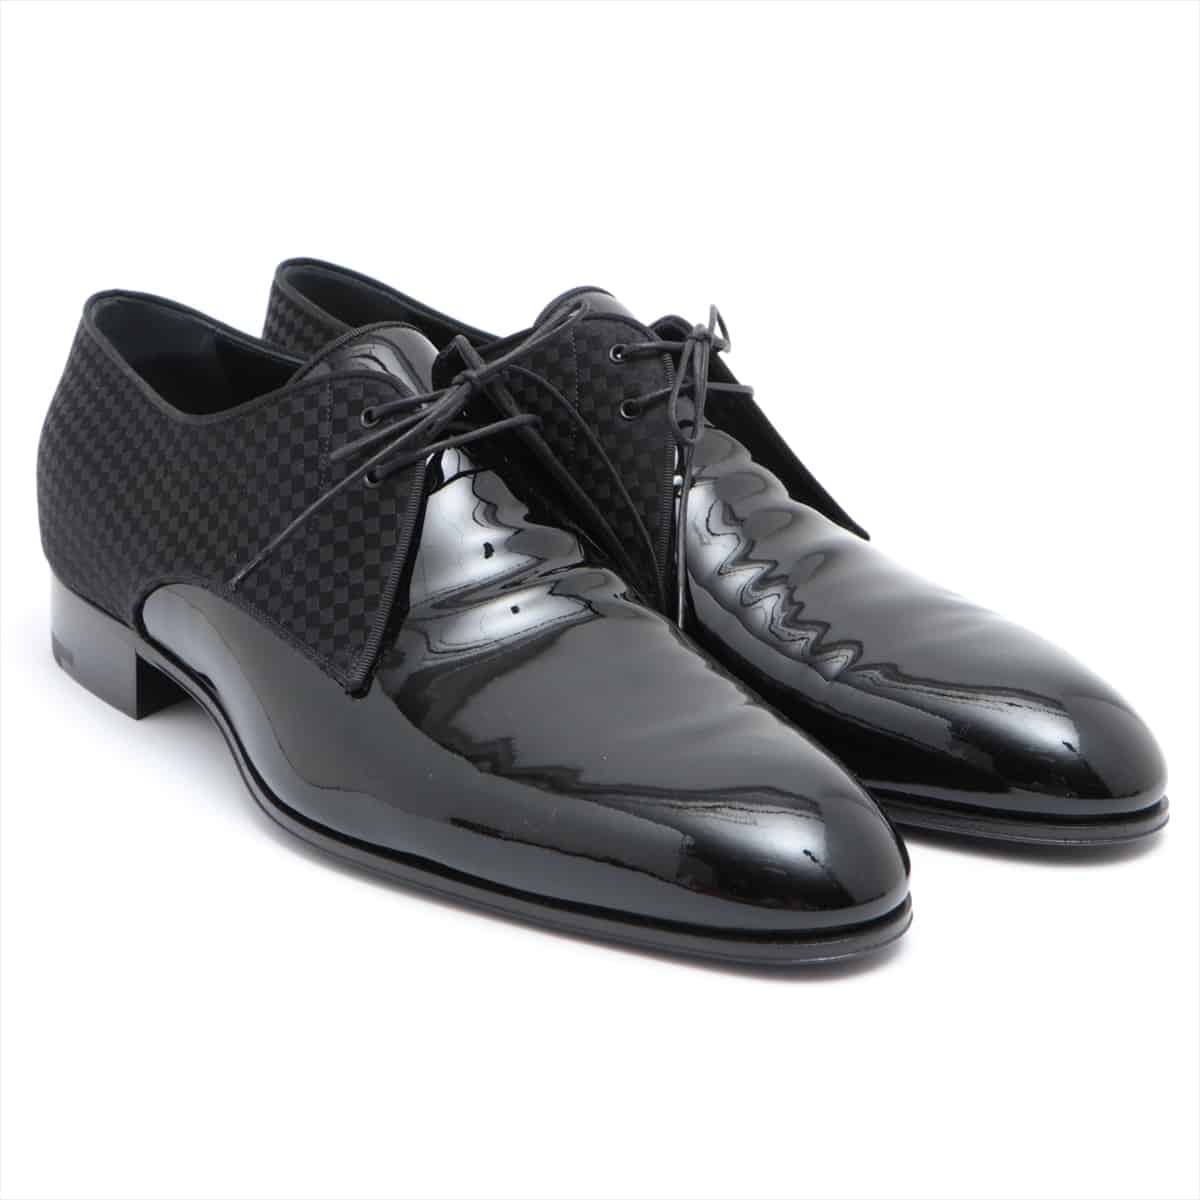 Louis Vuitton MT0177 Patent leather Dress shoes 9 Men's Black Damier With genuine shoe tree